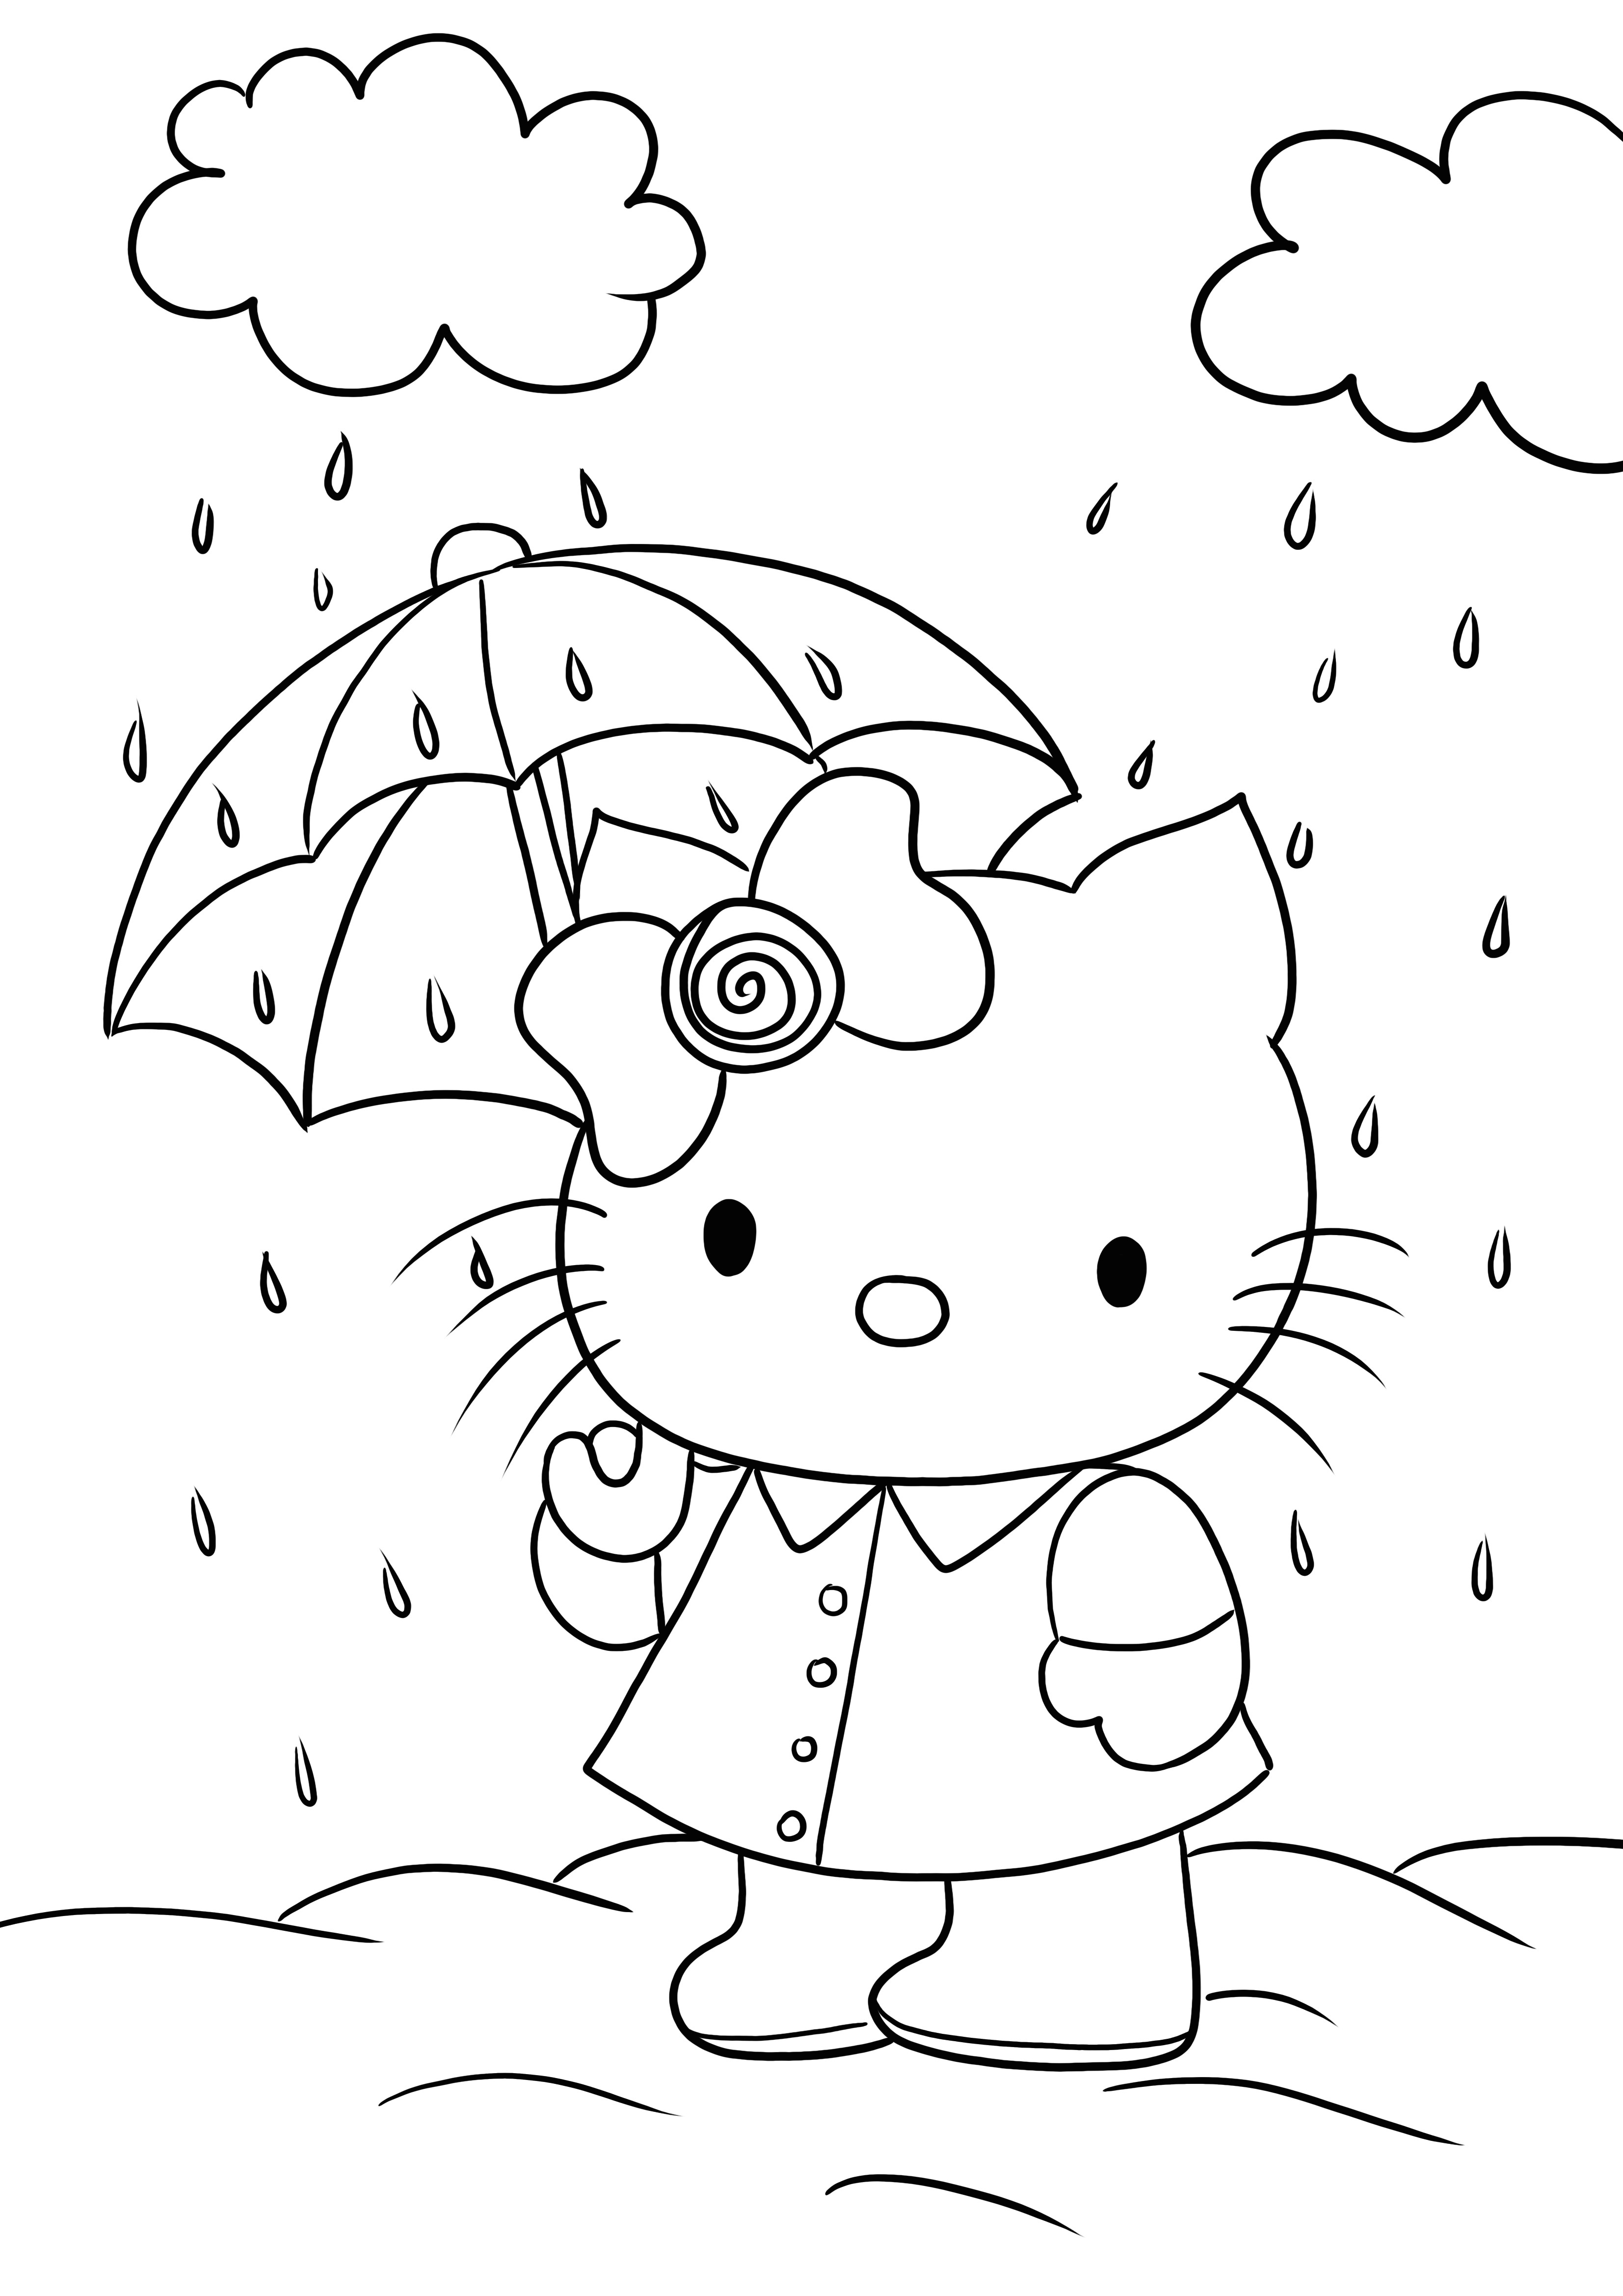 Hello Kitty, resmi yazdırmaya ve renklendirmeye hazır şemsiyenin altında